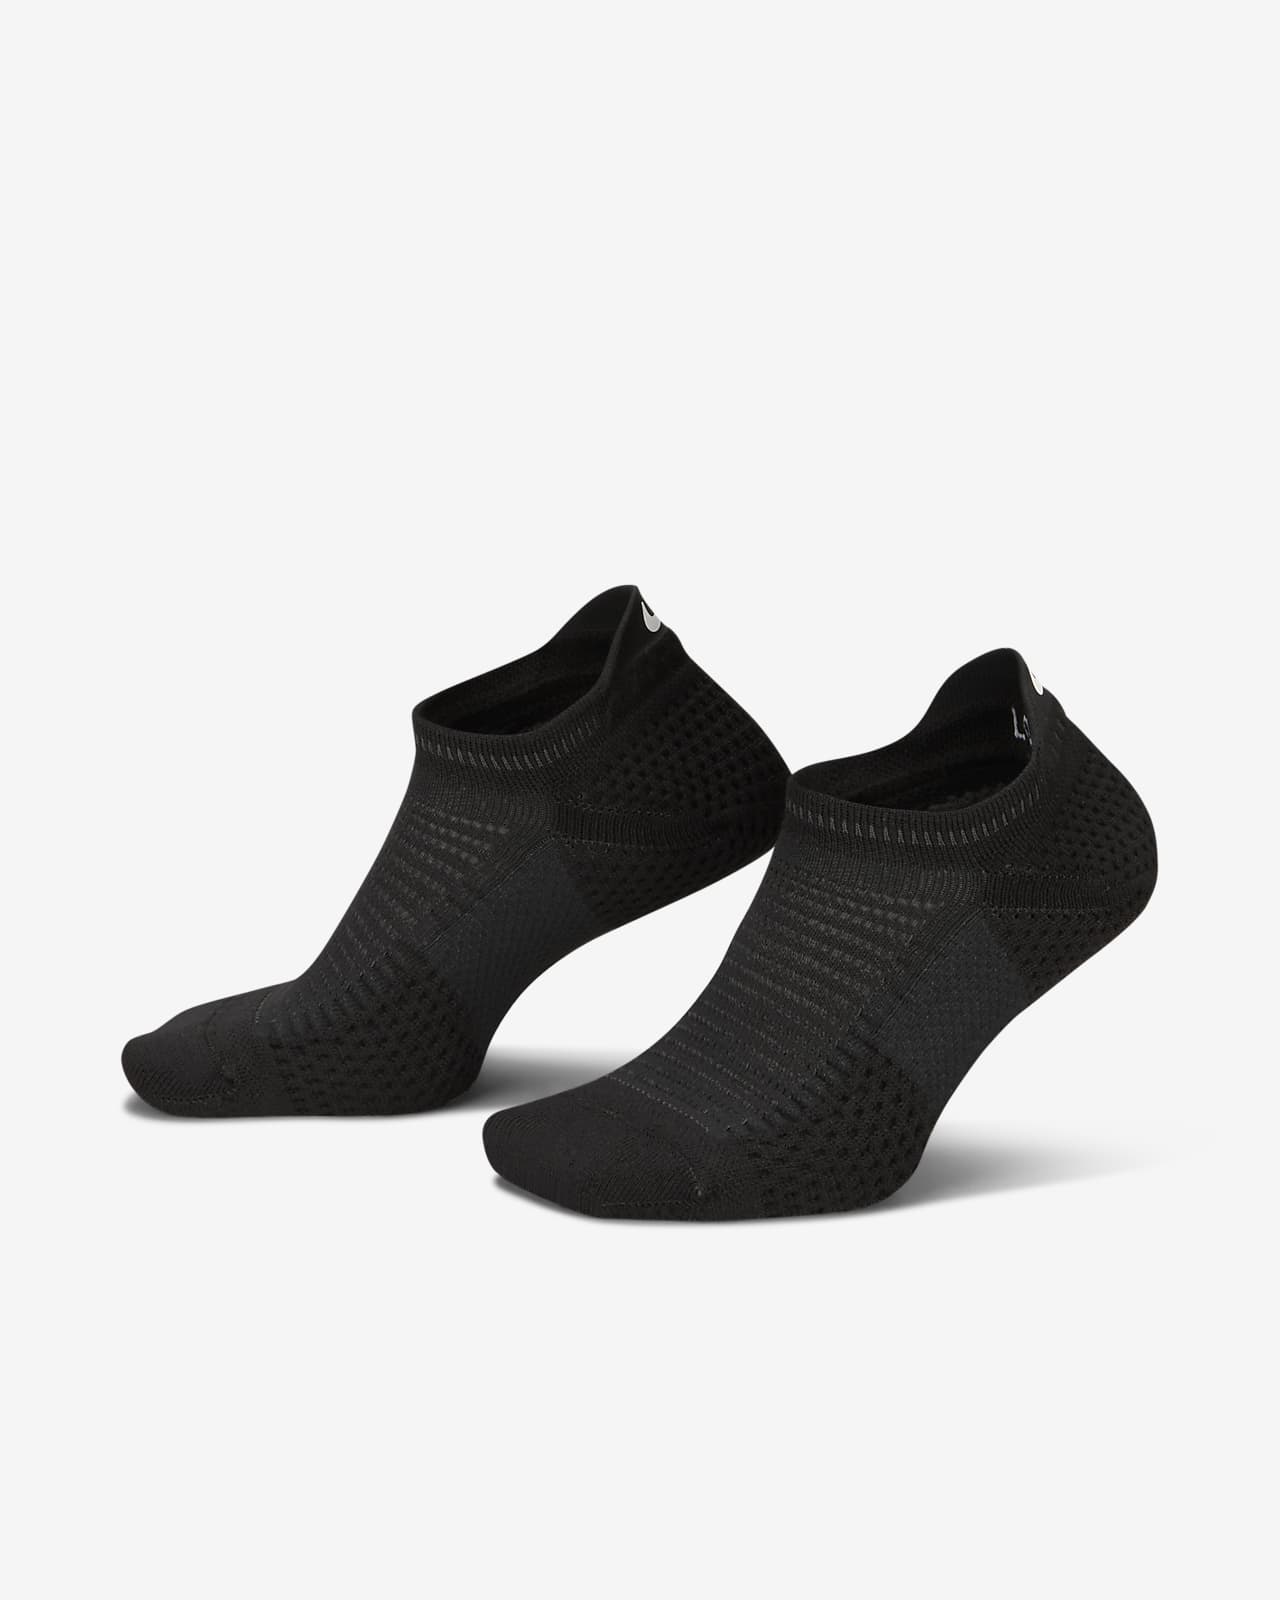 Κάλτσες μεσαίου ύψους με αντικραδασμική προστασία Dri-FIT ADV Nike Unicorn (ένα ζευγάρι)